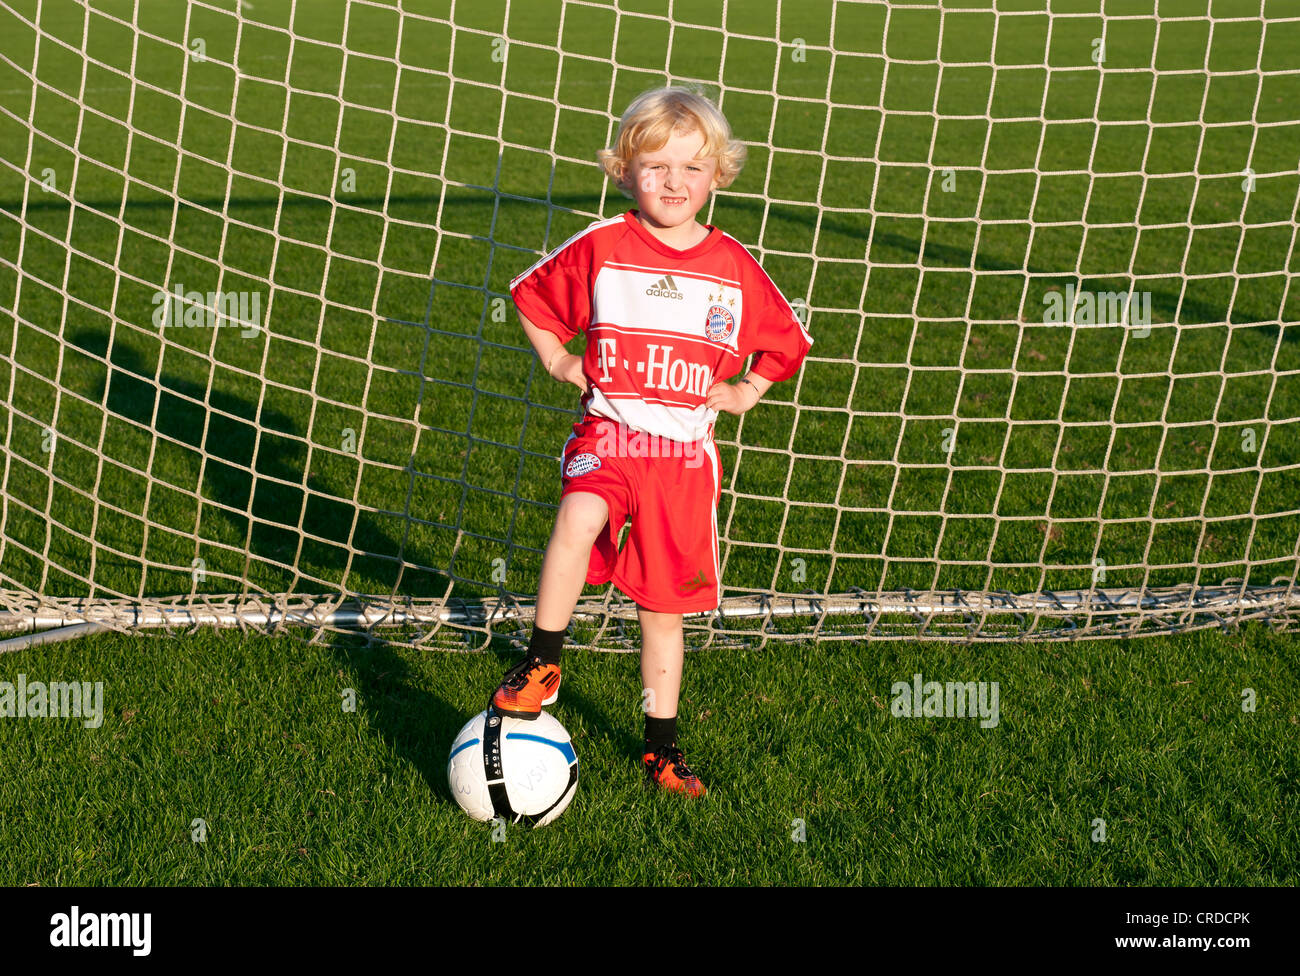 Petit garçon de cinq ans portant une robe de football FC Bayern Munich,  debout dans un but de football avec un ballon de foot Photo Stock - Alamy